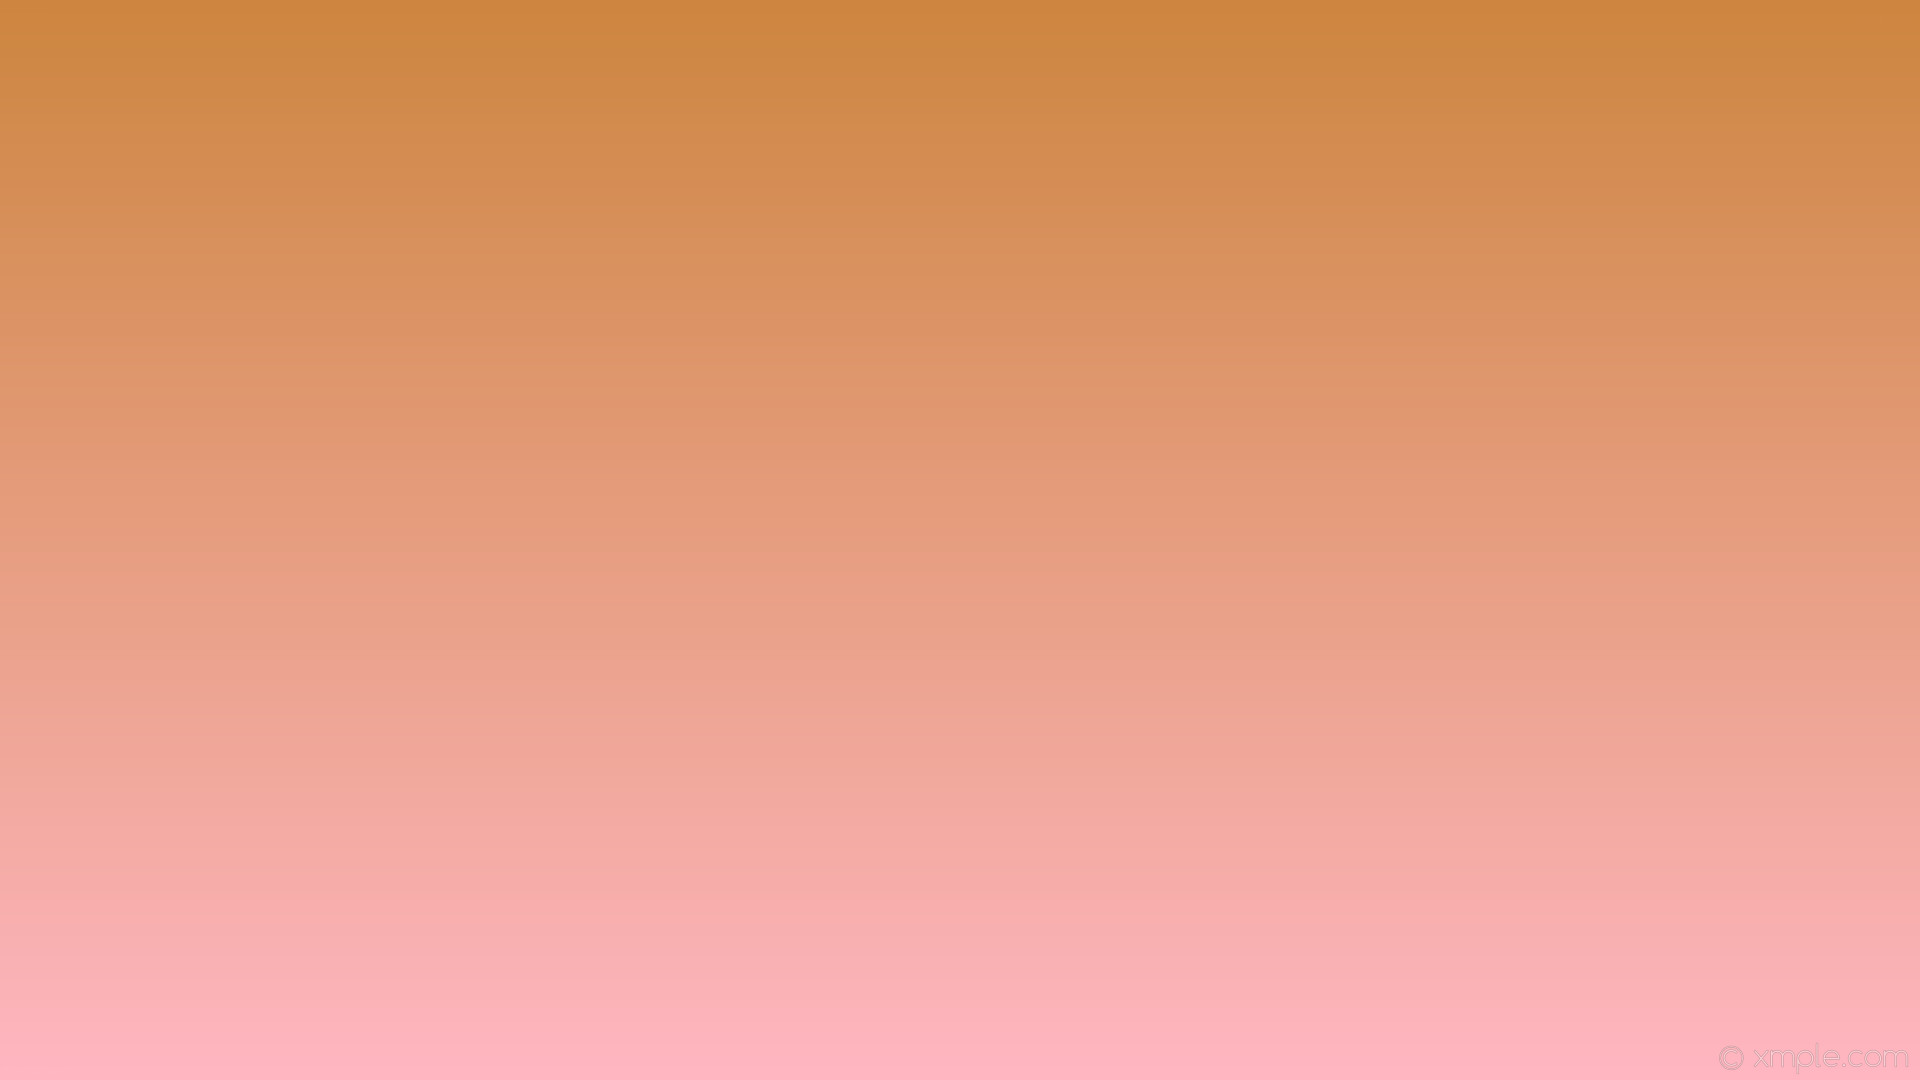 1920x1080 wallpaper brown pink gradient linear light pink peru #ffb6c1 #cd853f 270Â°